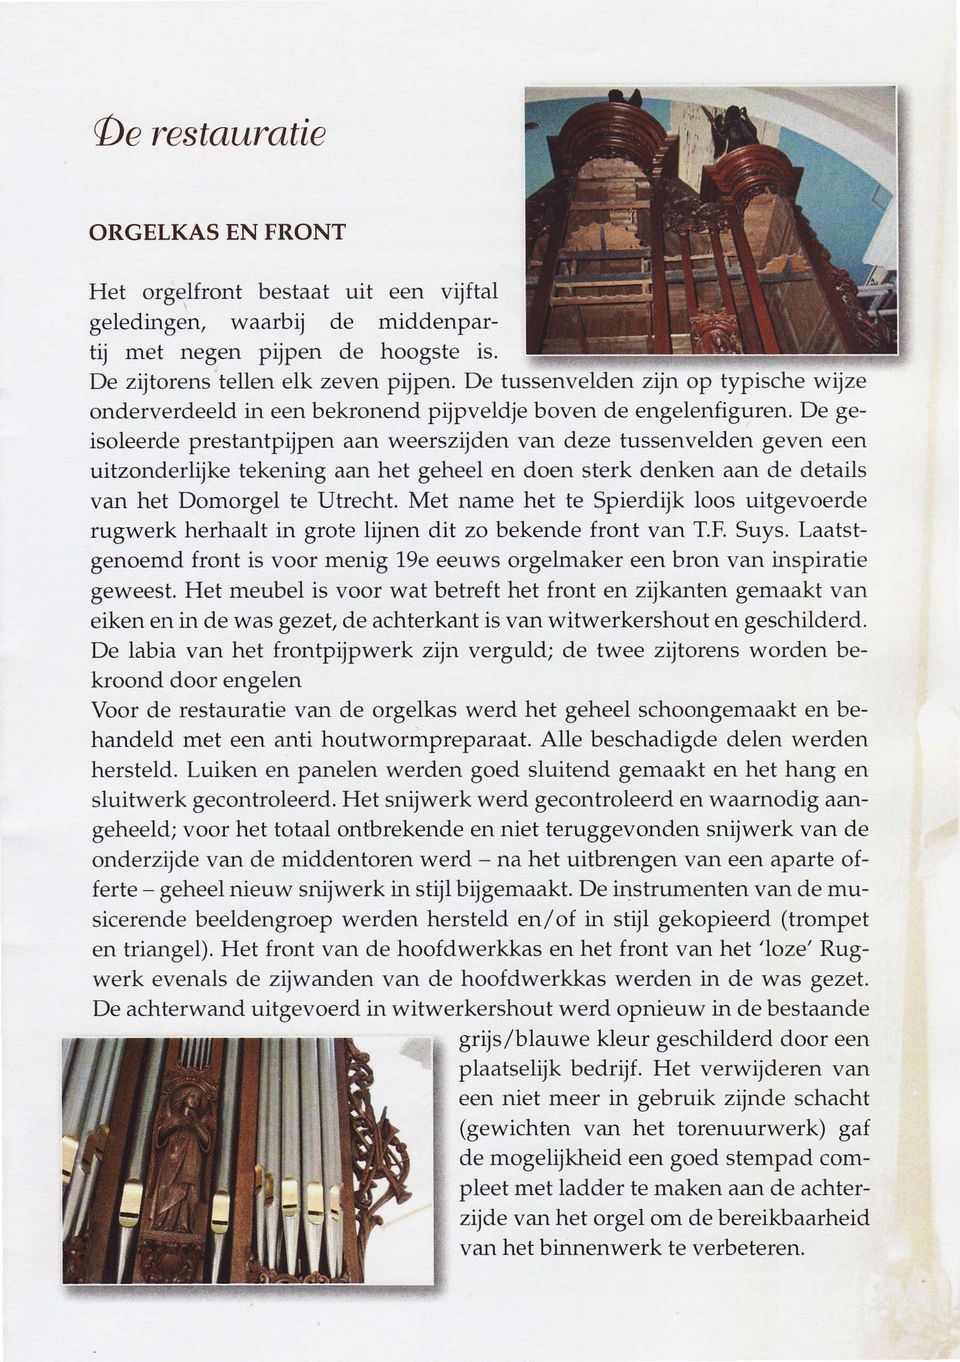 De geisoleerde prestantpijpen aan weerszijden van deze tussenvelden geven een uitzonderlijke tekening aan het geheel en doen sterk denken aan de details van het Domorgel te Utrecht.